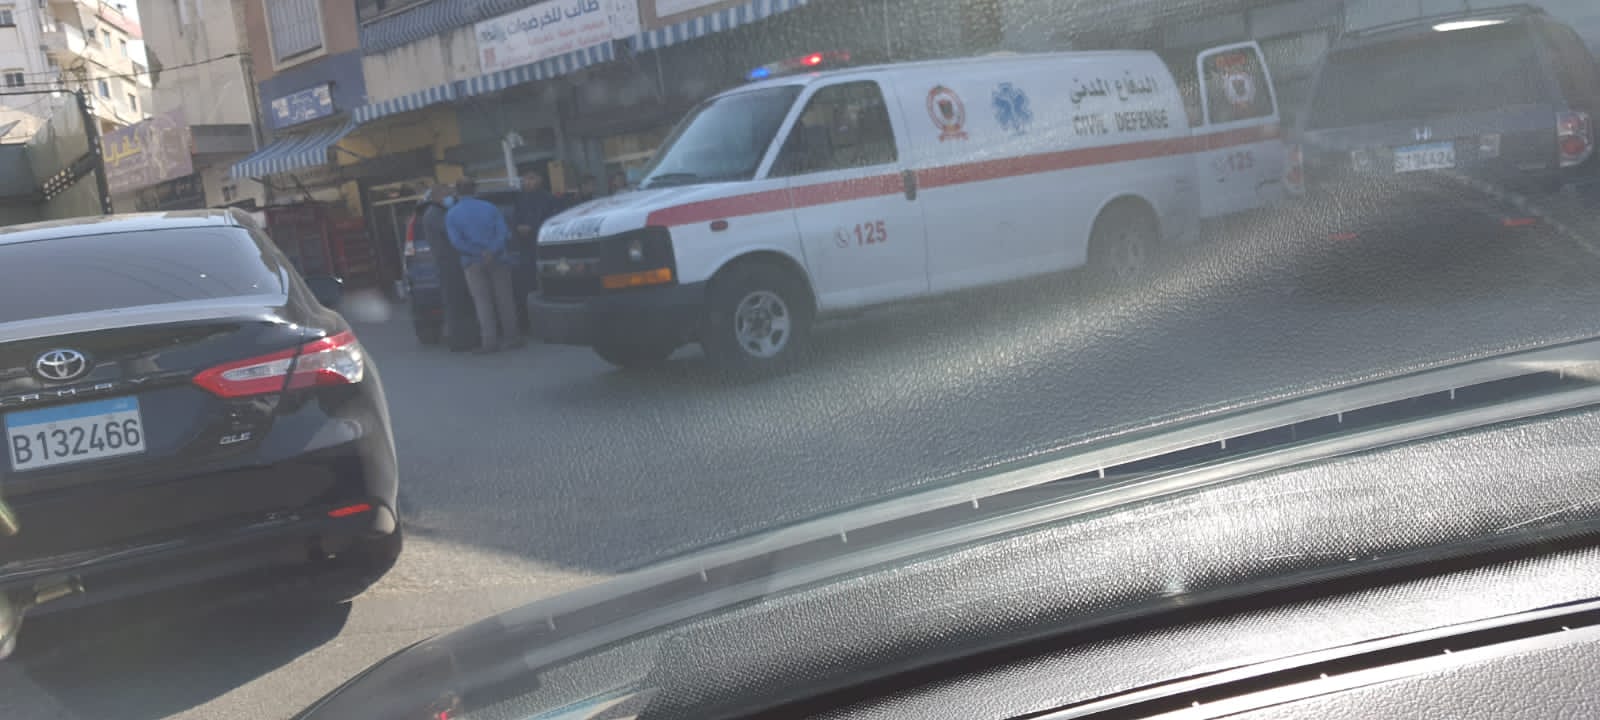 عمل عناصر الدفاع المدني اللبناني في صور على نقل جريحة نتيجة حادث صدم بواسطة سيارة عند مفرق معركة ، وتم نقلها إلى مستشفى جبل عامل للمعالج